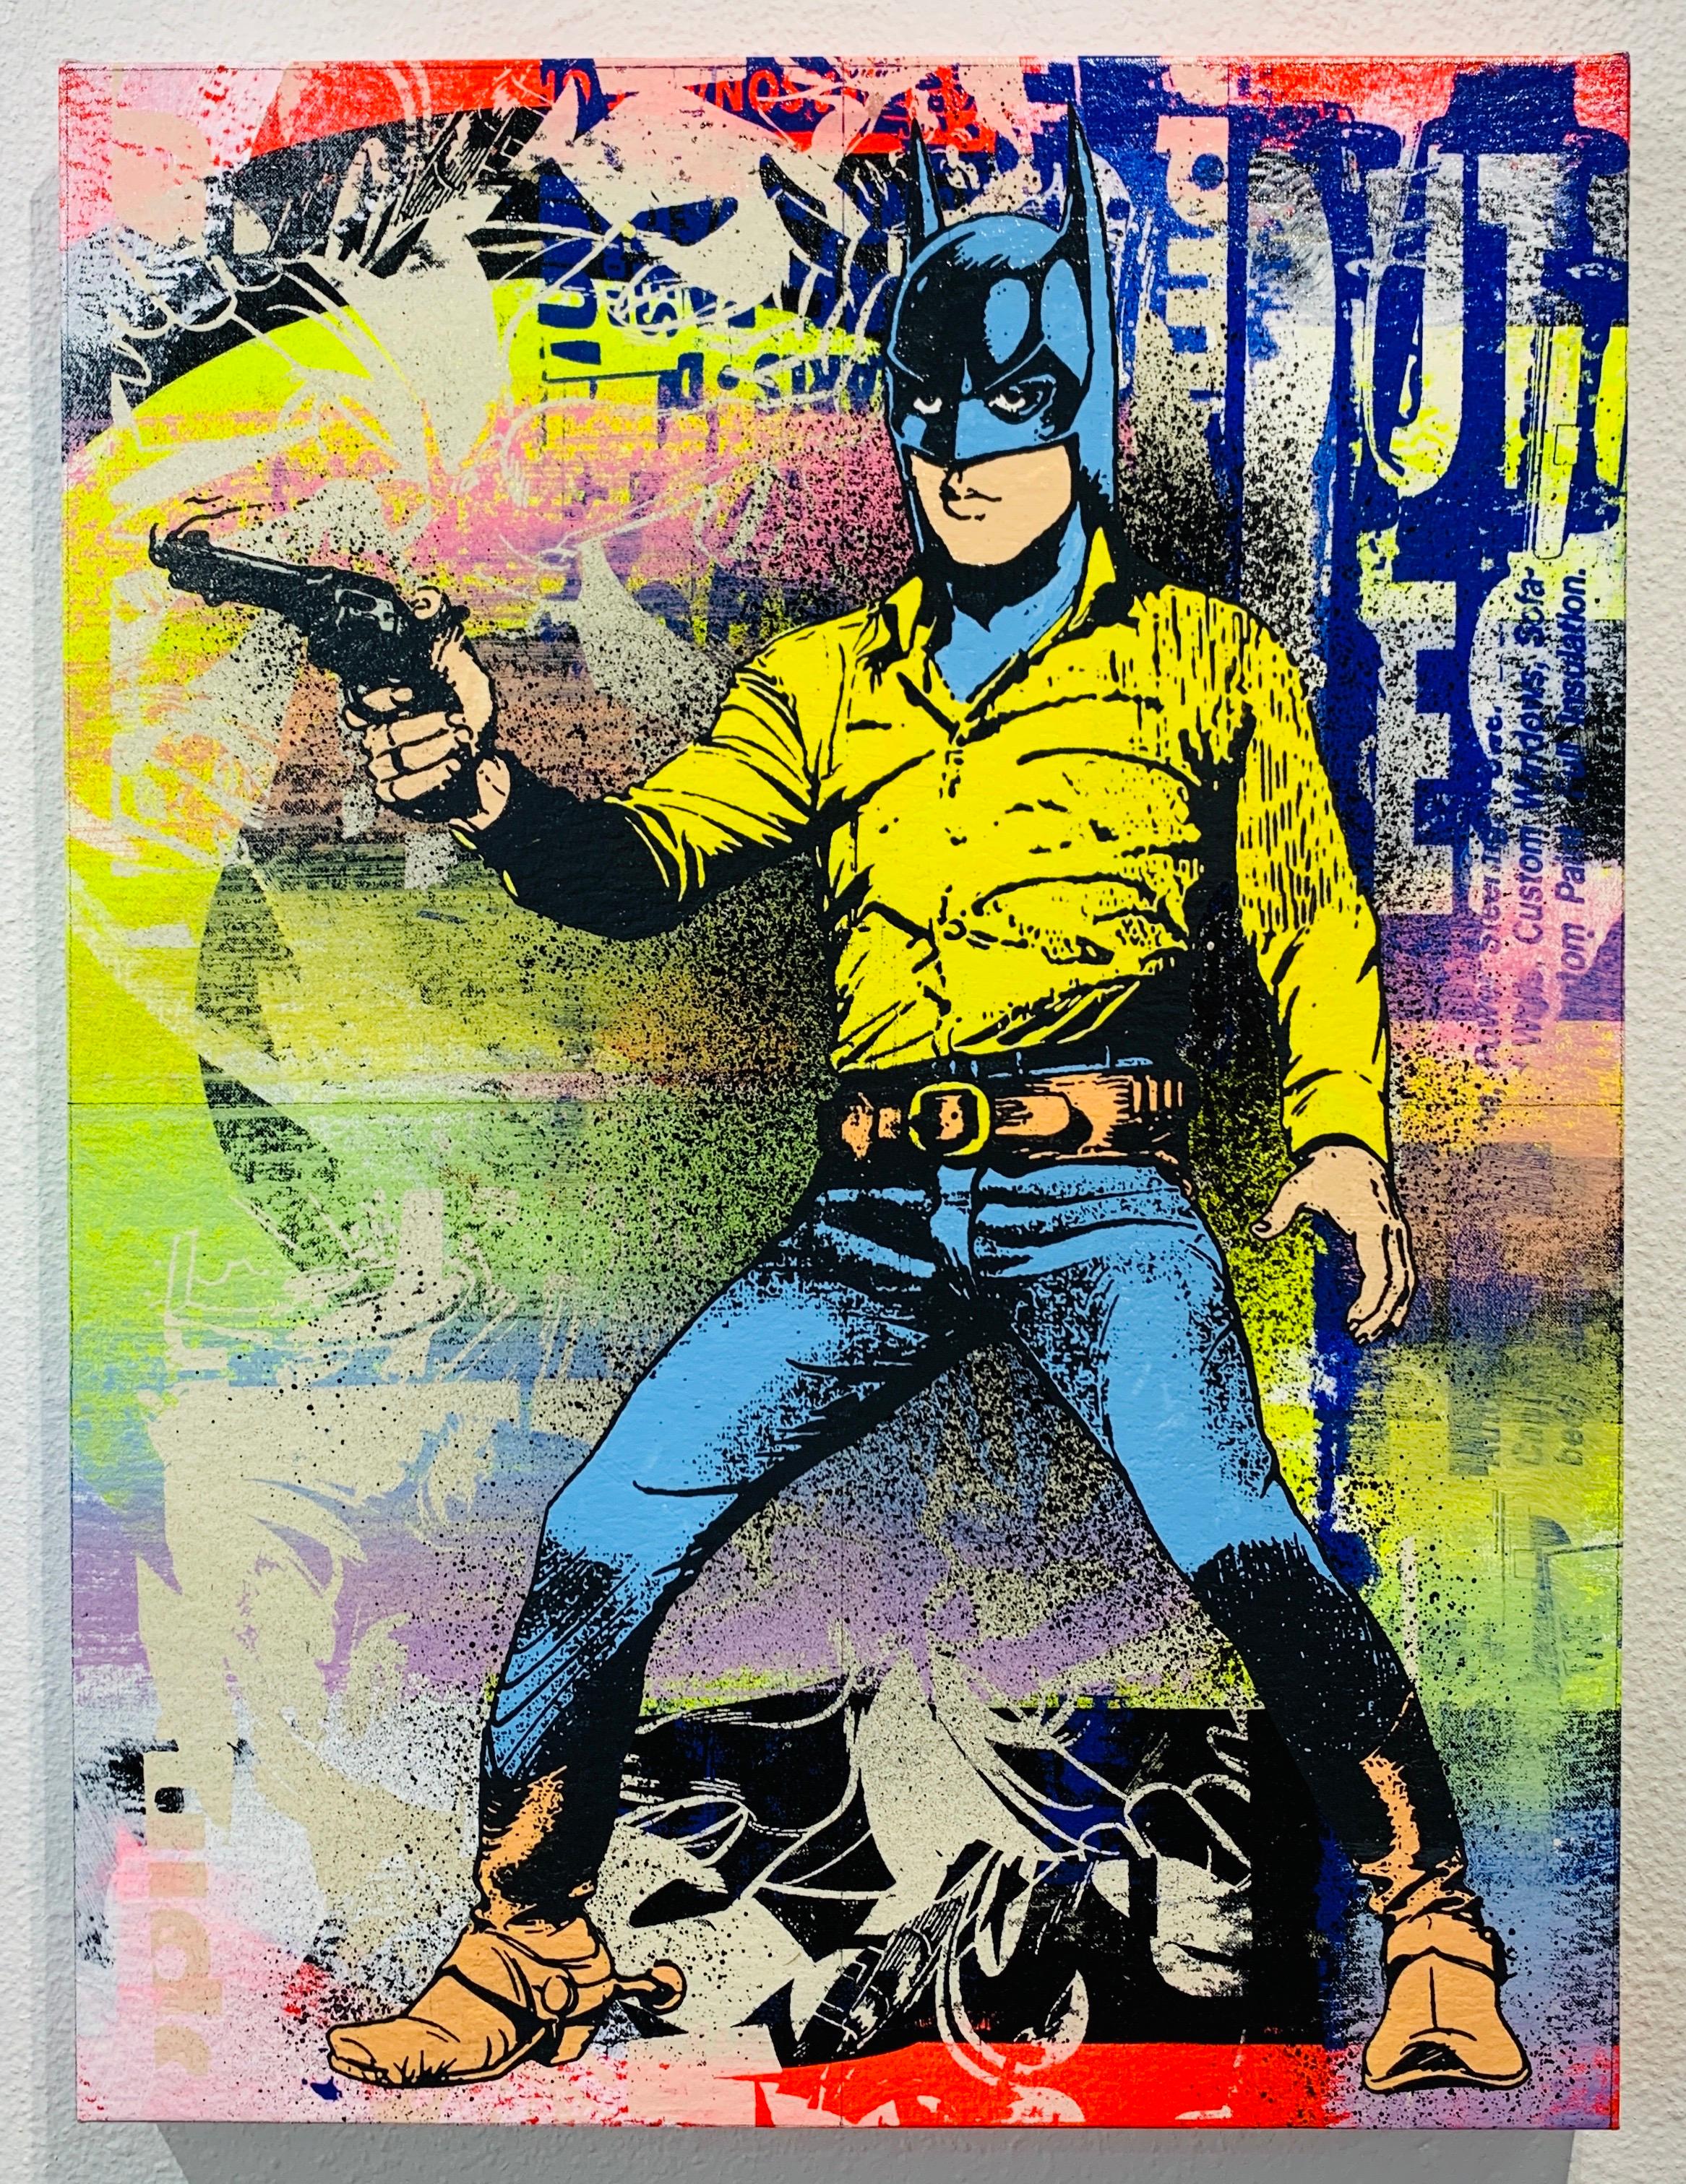 Gotham Cowboy - Painting by Greg Gossel